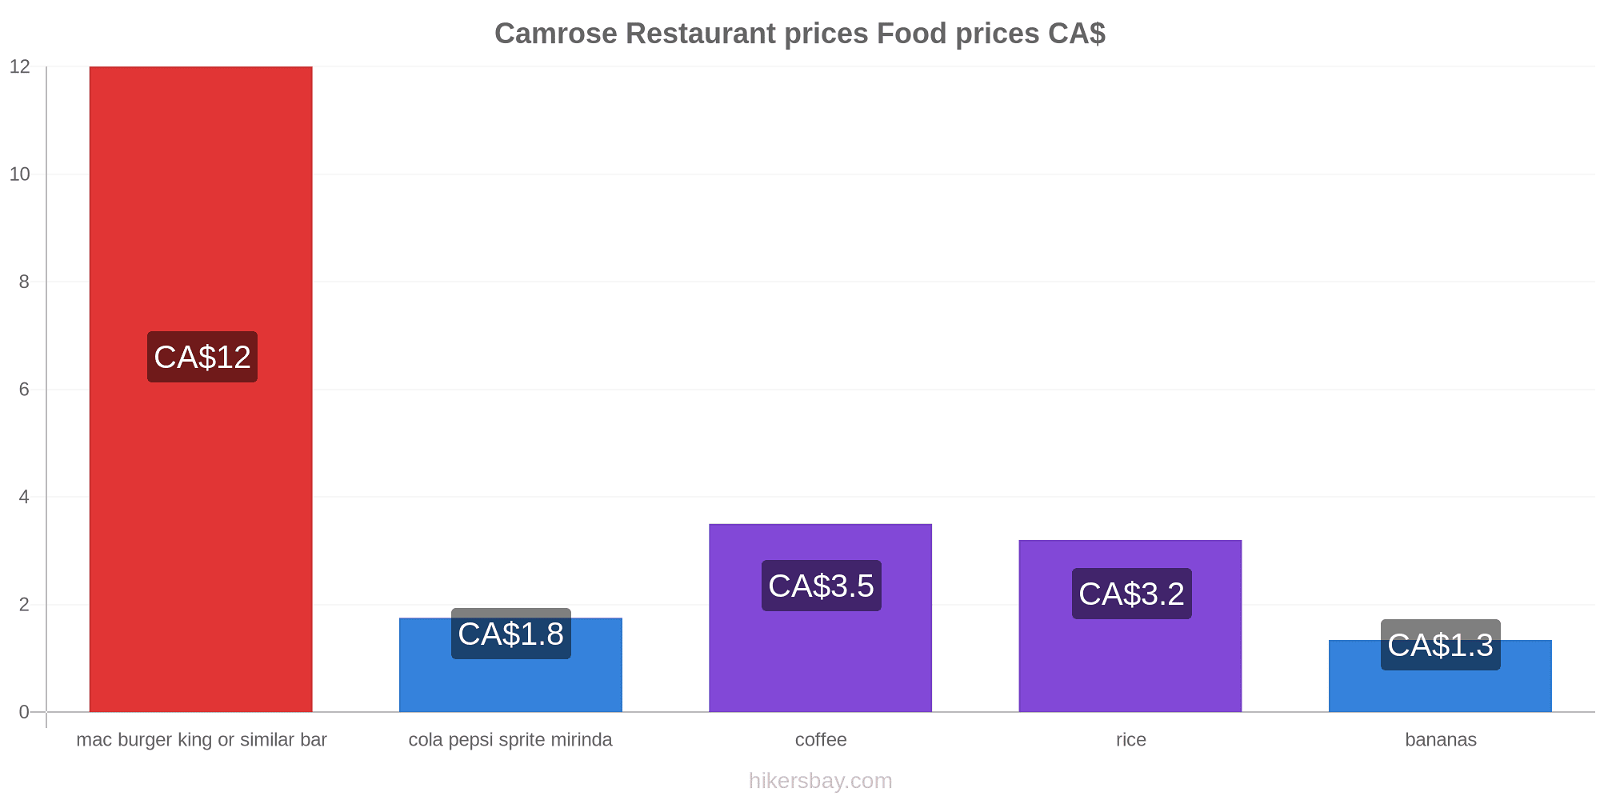 Camrose price changes hikersbay.com